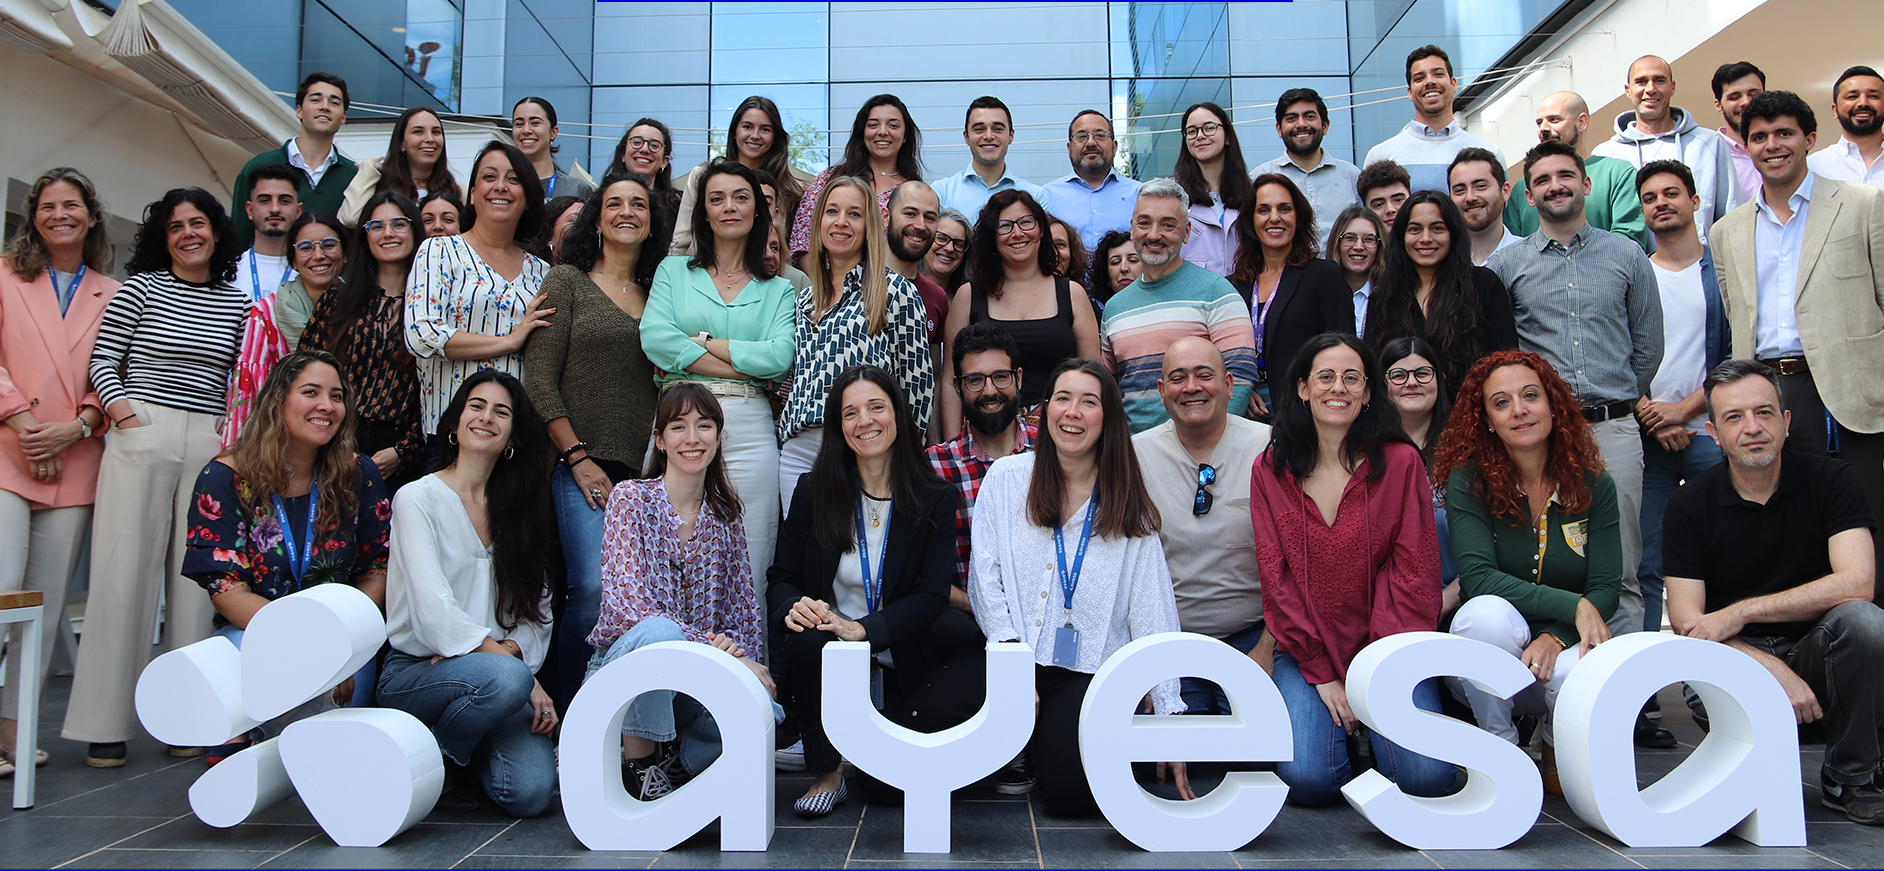 Forbes destaca a Ayesa como una de las cien mejores empresas para trabajar en España